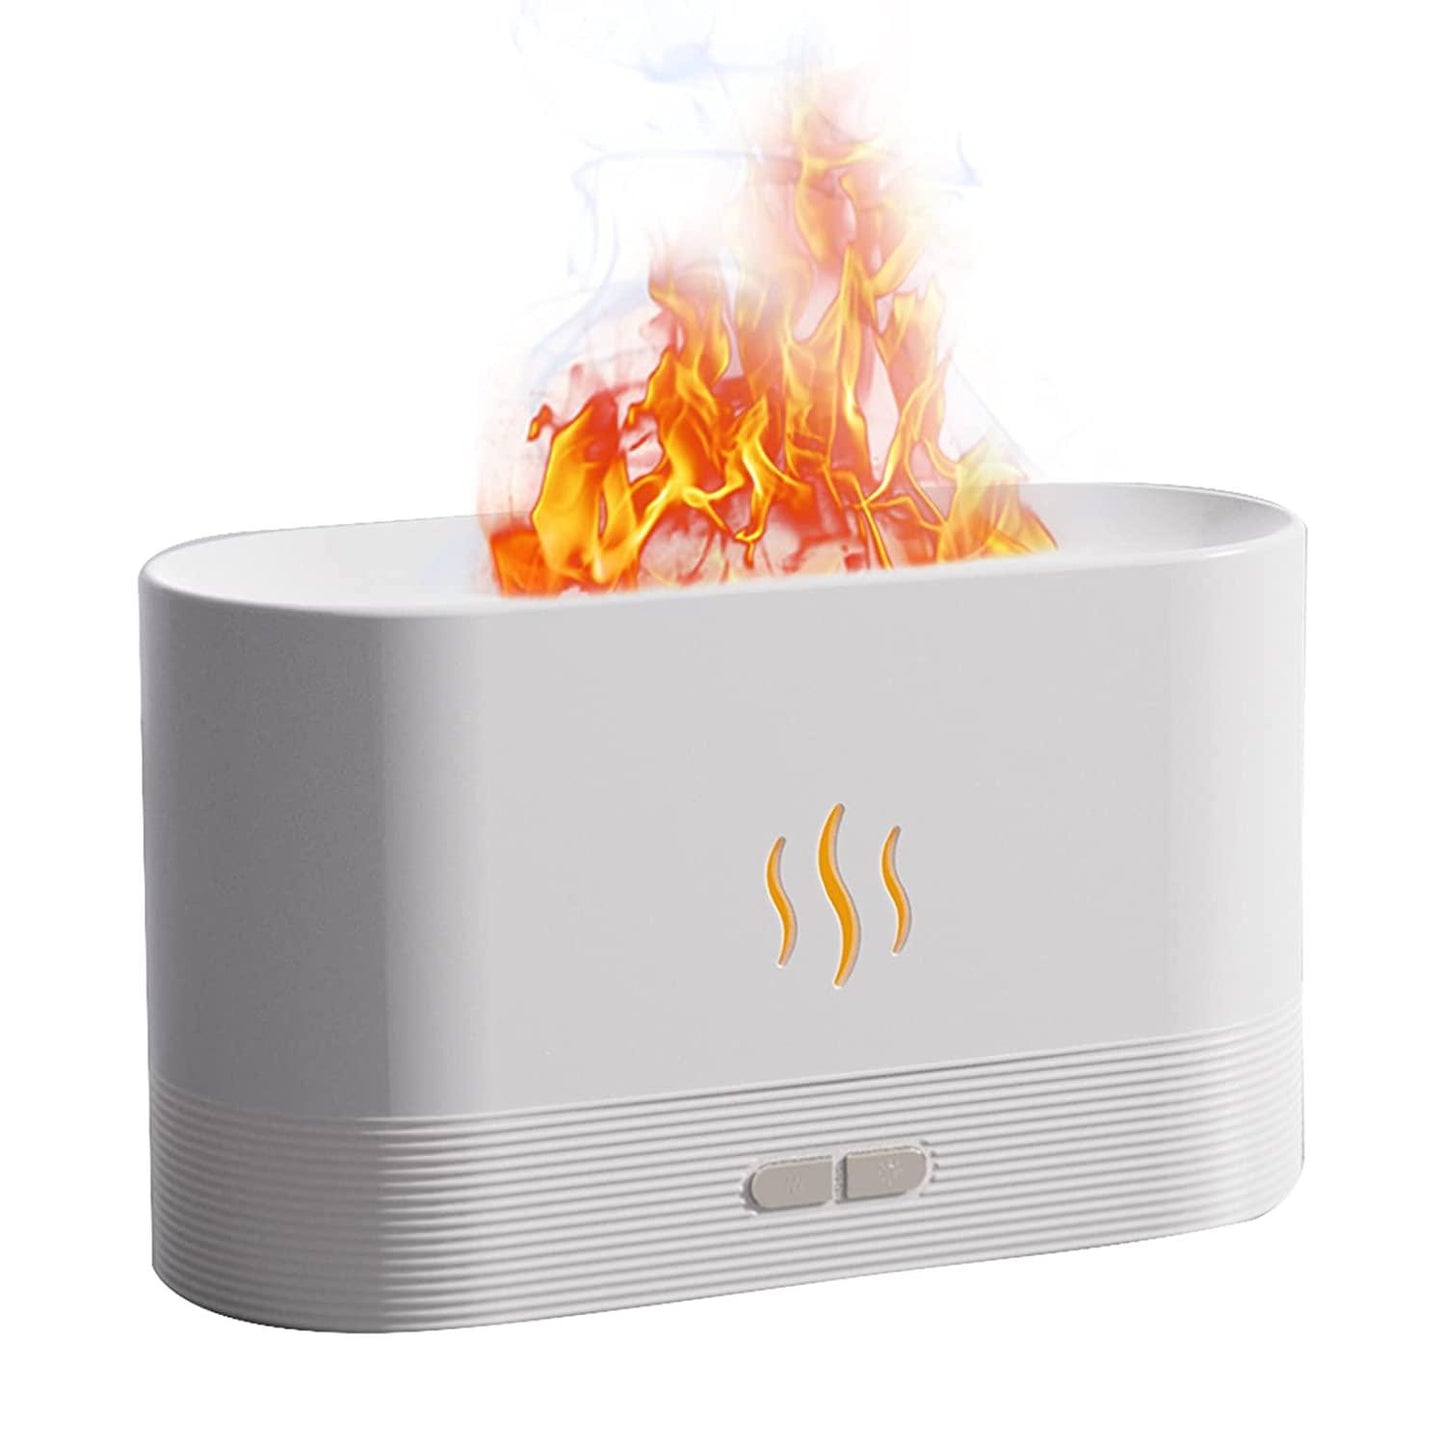 HIVAGI® Flame Air Diffuser Volcano Aroma Diffuser Ultrasonic Oil Diffu